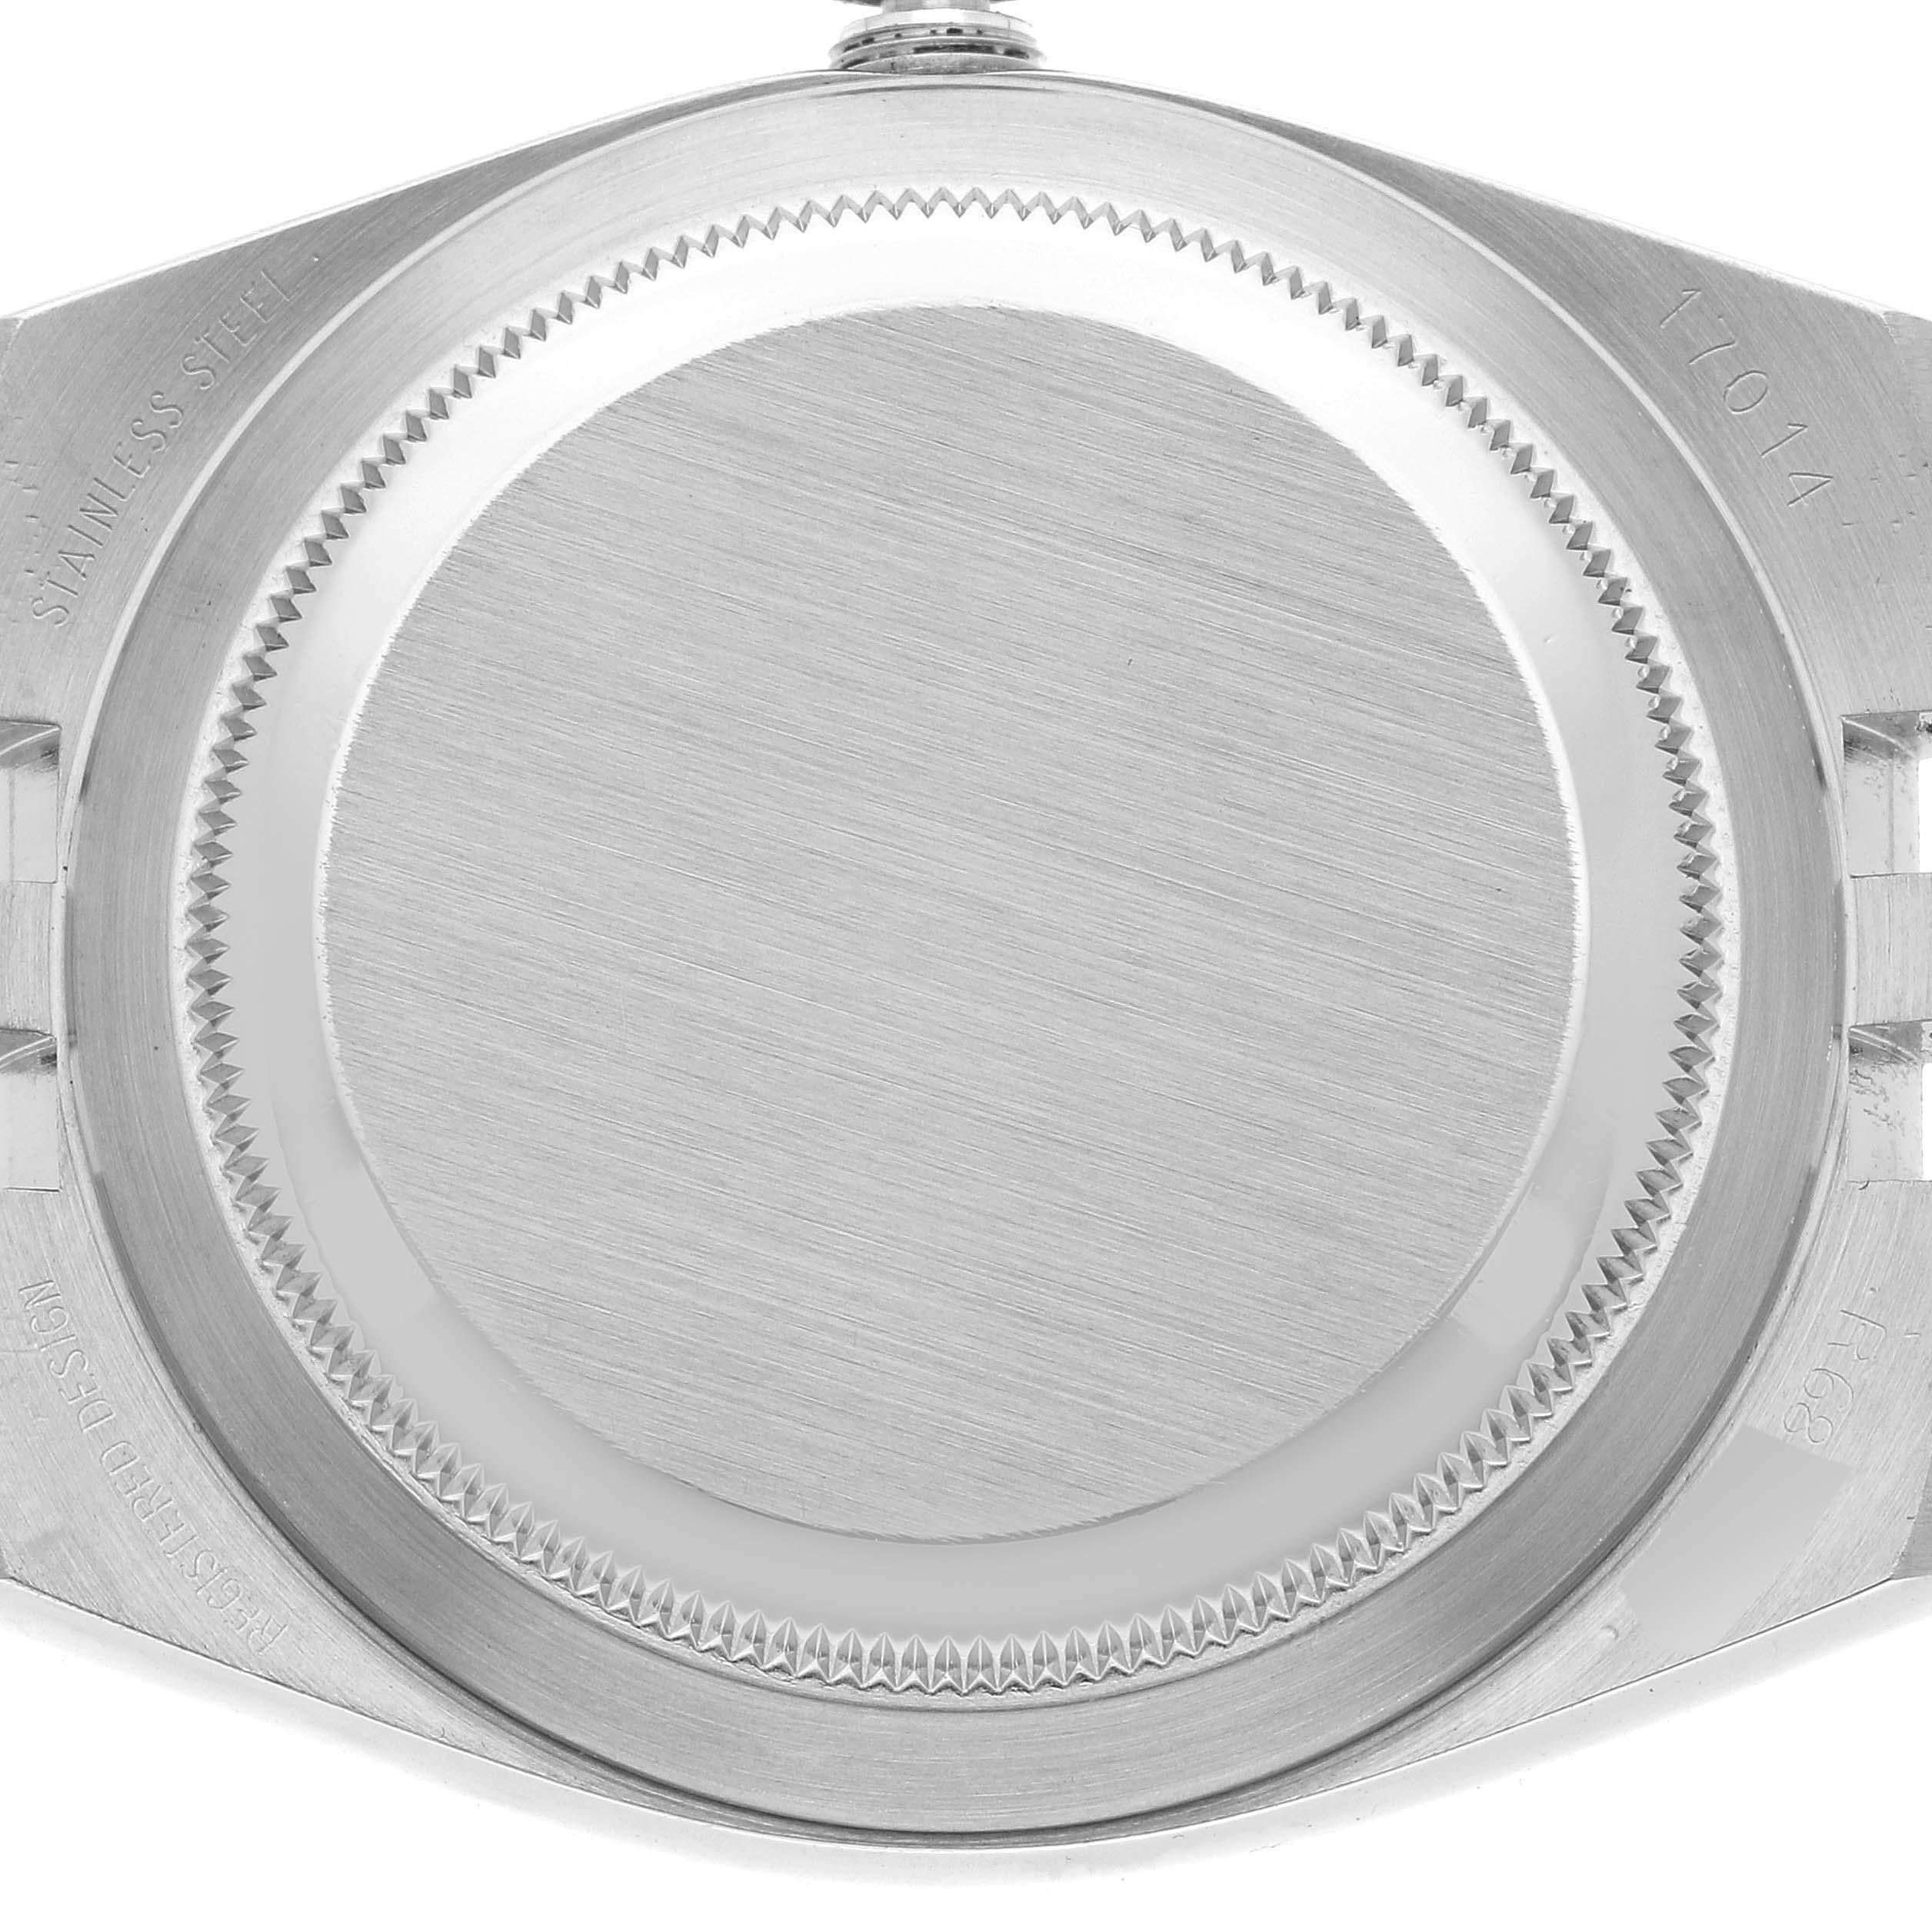 Rolex Oysterquartz Datejust Steel White Gold Diamond Dial Mens Watch 17014. Mouvement à quartz. Boîtier oyster en acier inoxydable de 36.0 mm de diamètre. Logo Rolex sur une couronne. Lunette cannelée en or blanc 18k. Verre saphir résistant aux